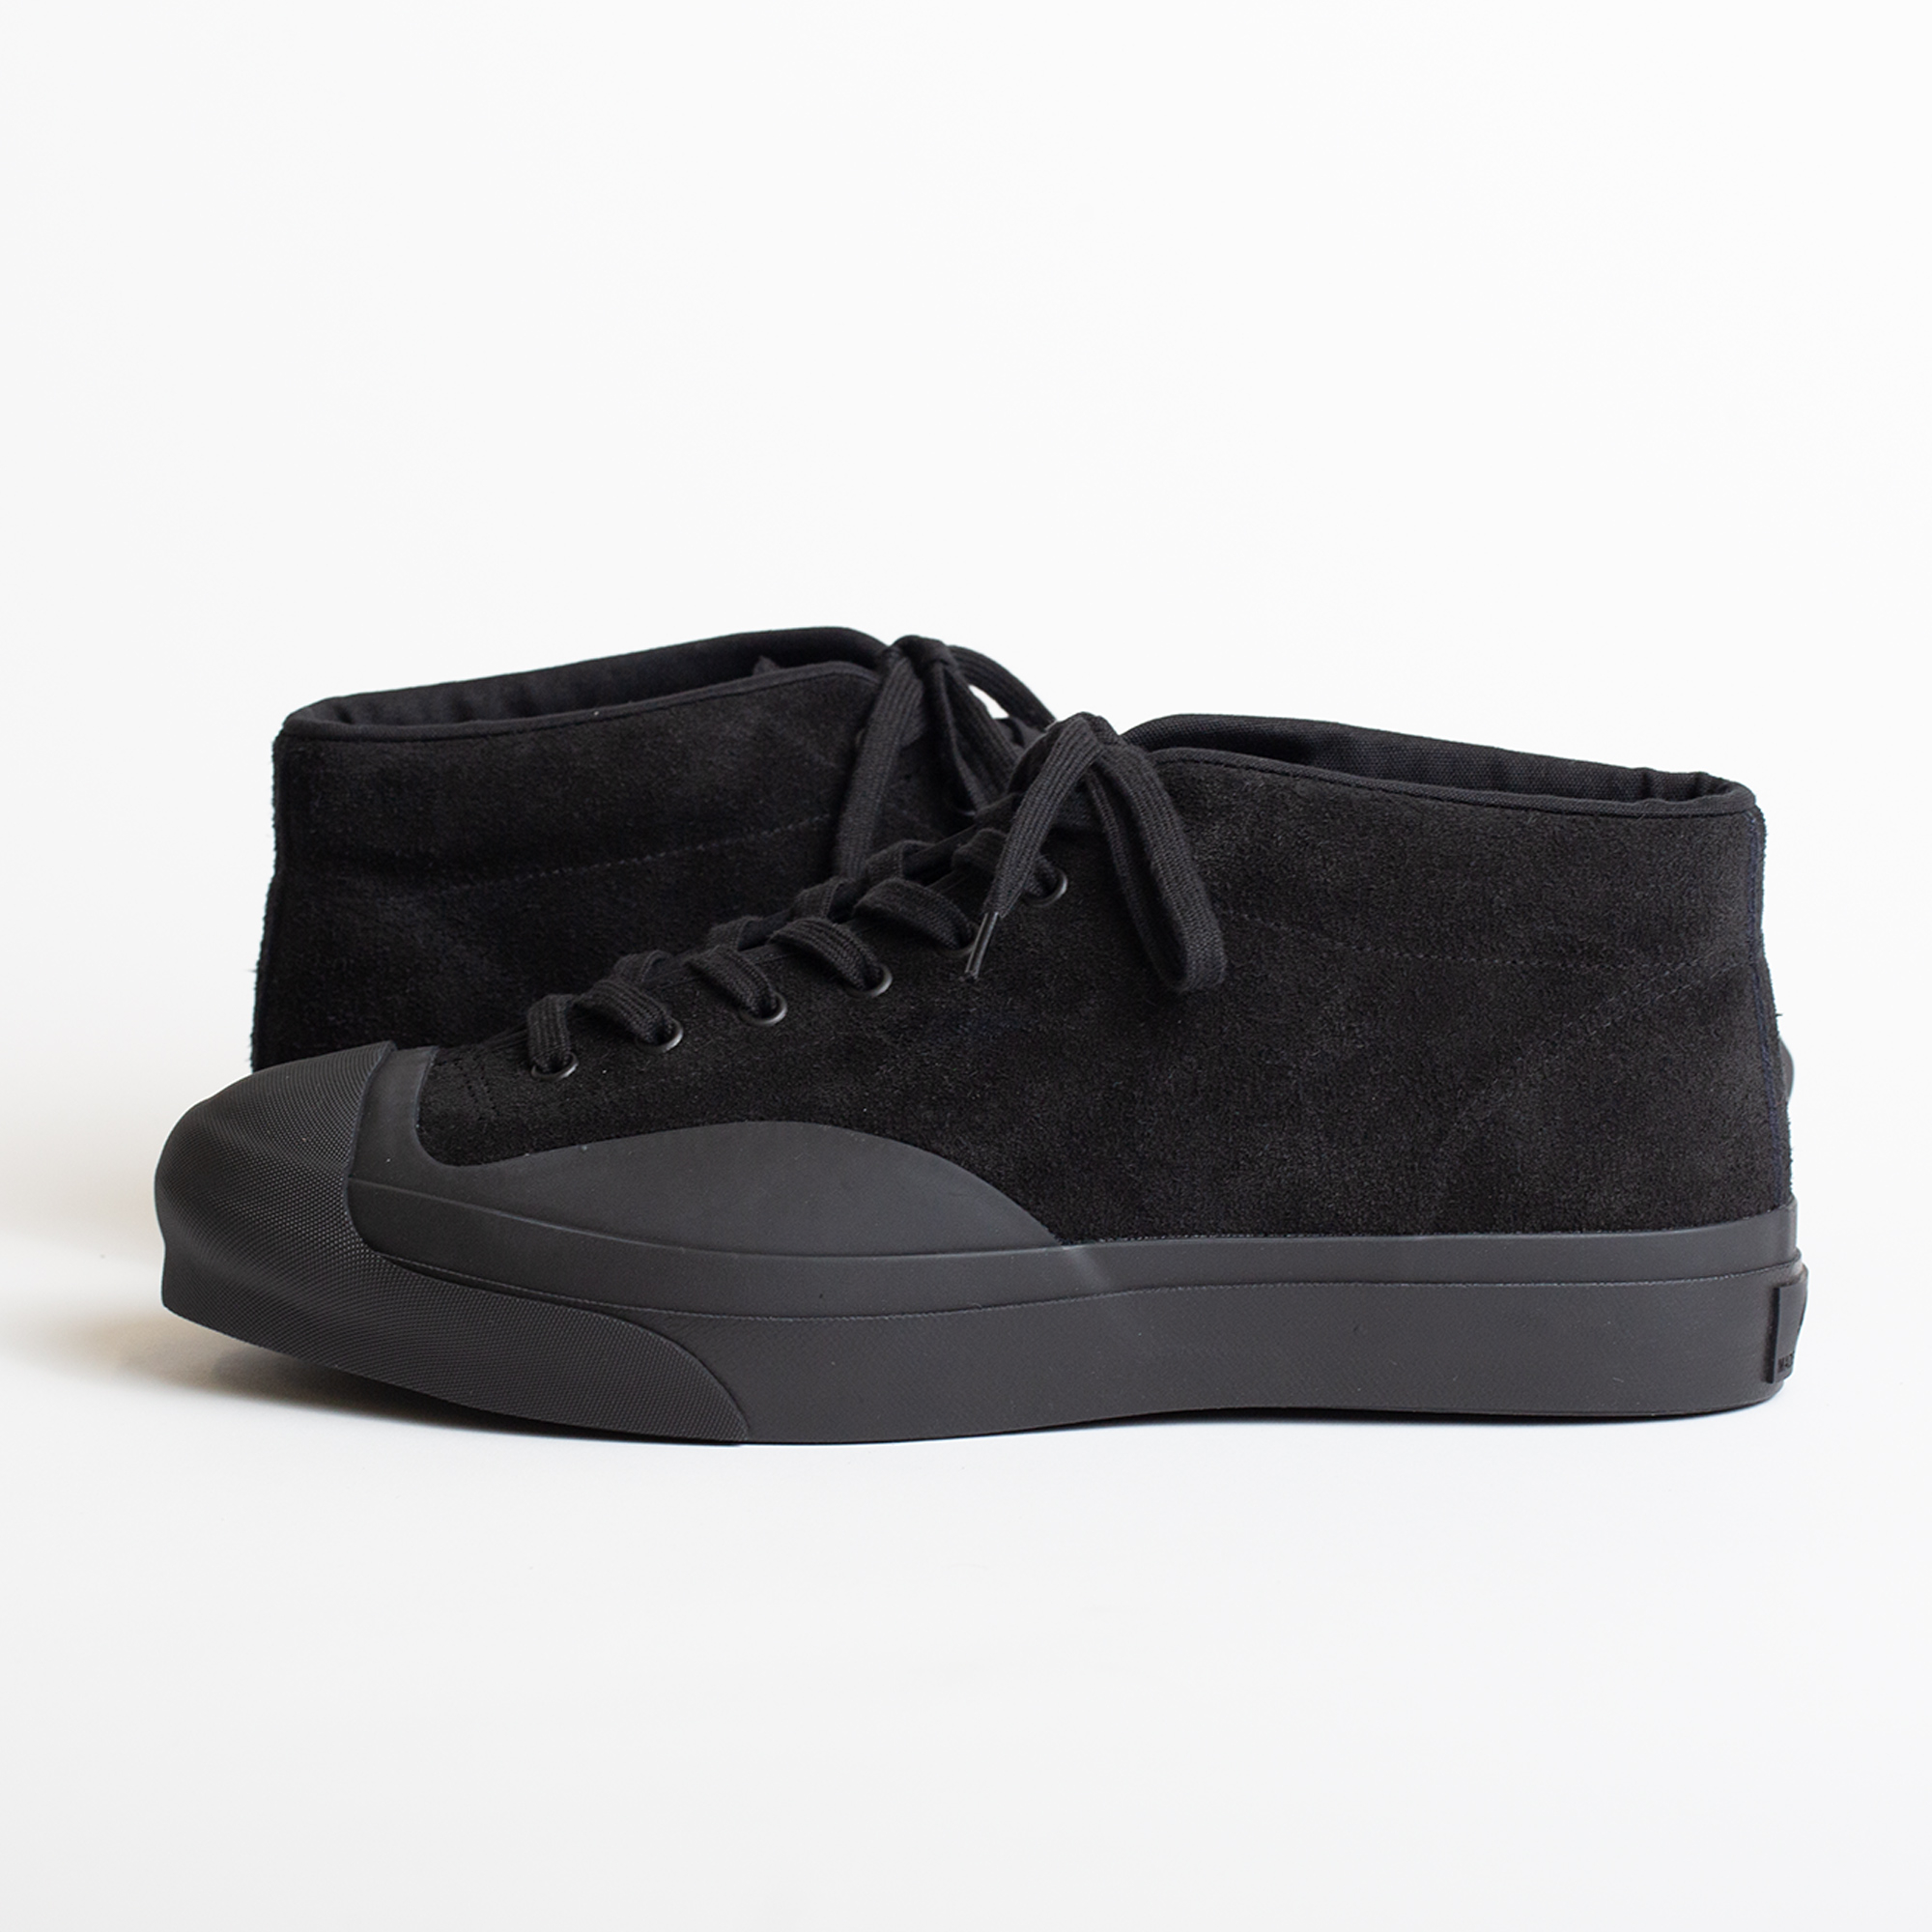 SIDEWALK shoes in Jet black color by Moonstar for Arpenteur